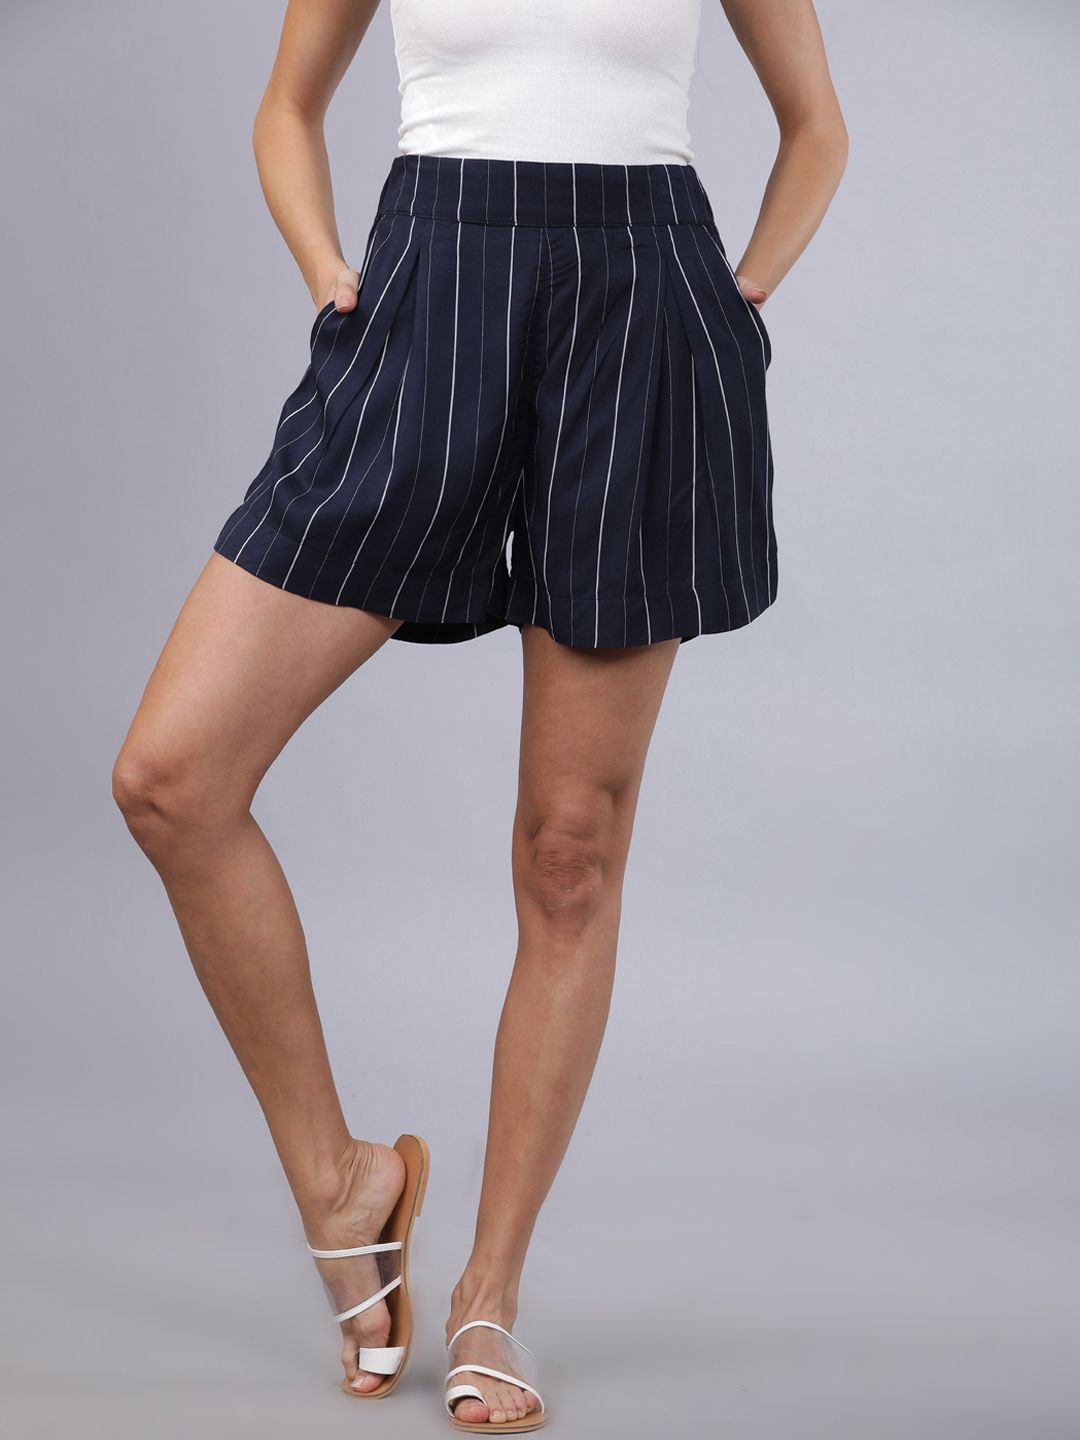 Tokyo Talkies Women Navy Blue & White Striped Regular Shorts Price in India